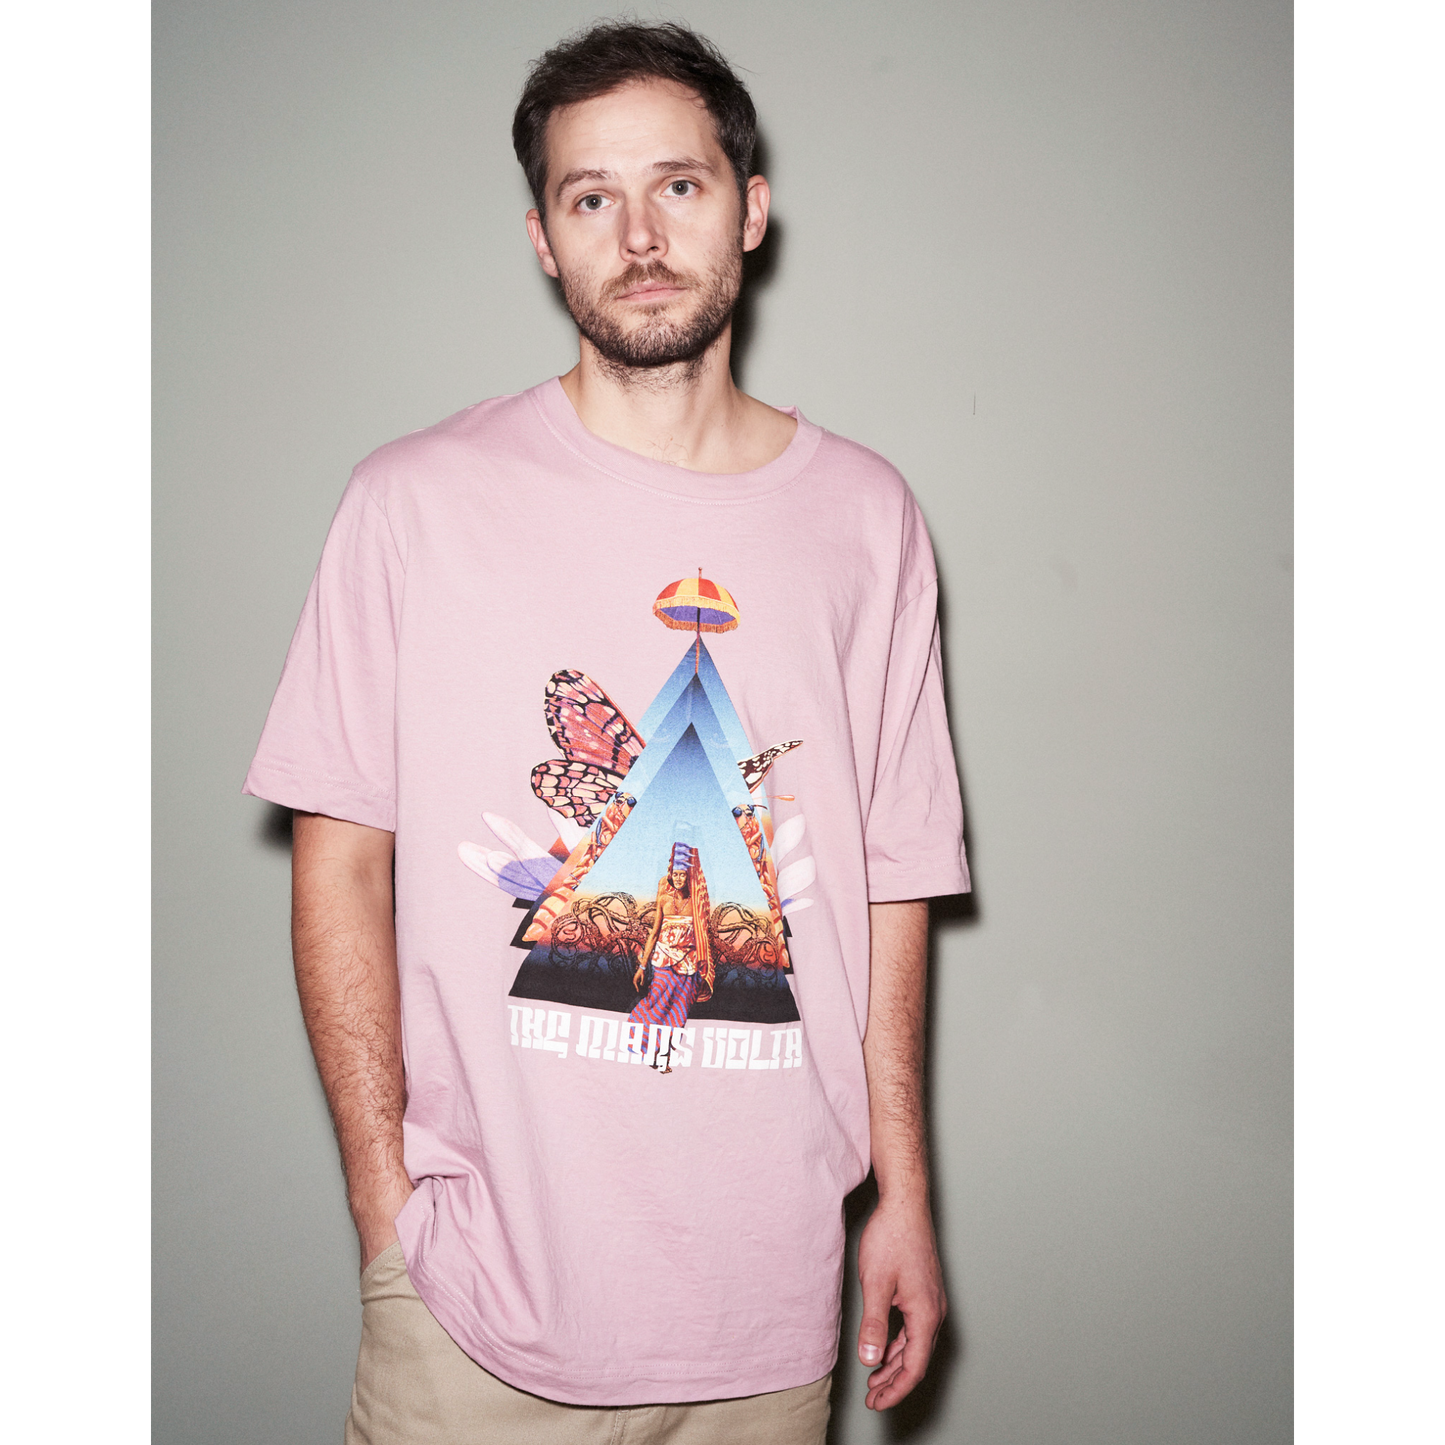 The Mars Volta - Noctourniquet - 2LP + T-Shirt